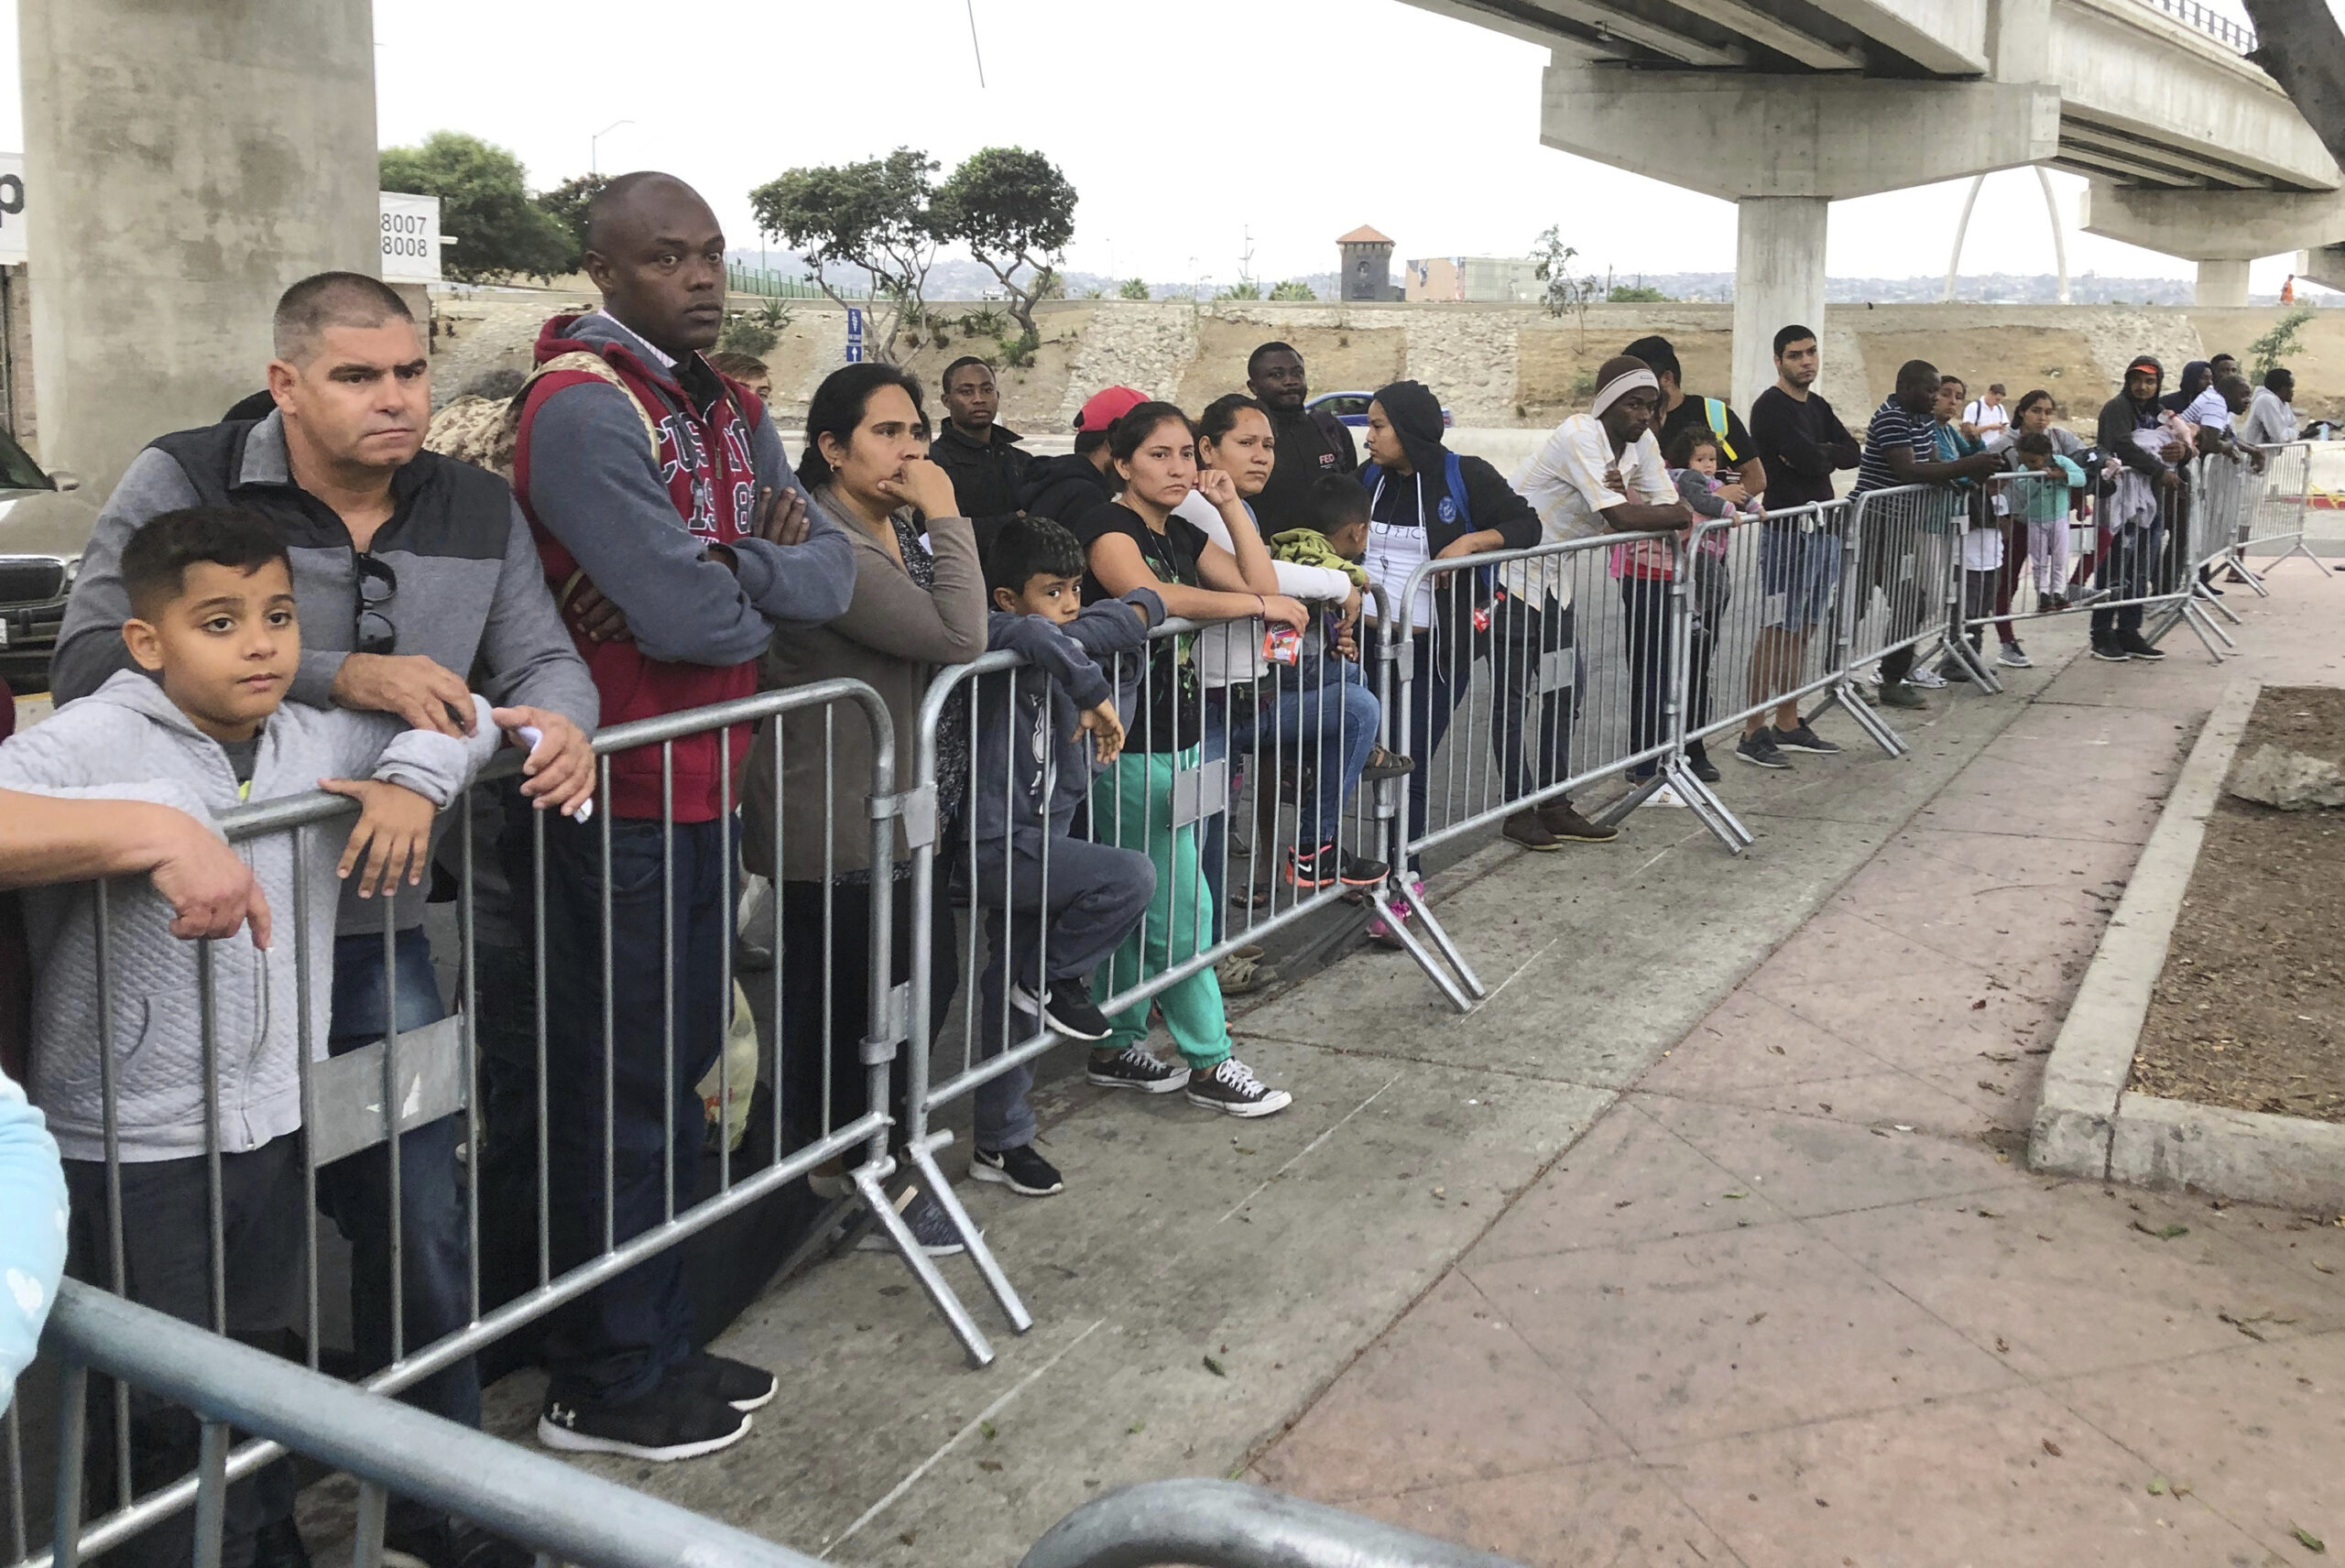 Asylum seekers wait in line in Tijuana, Mexico